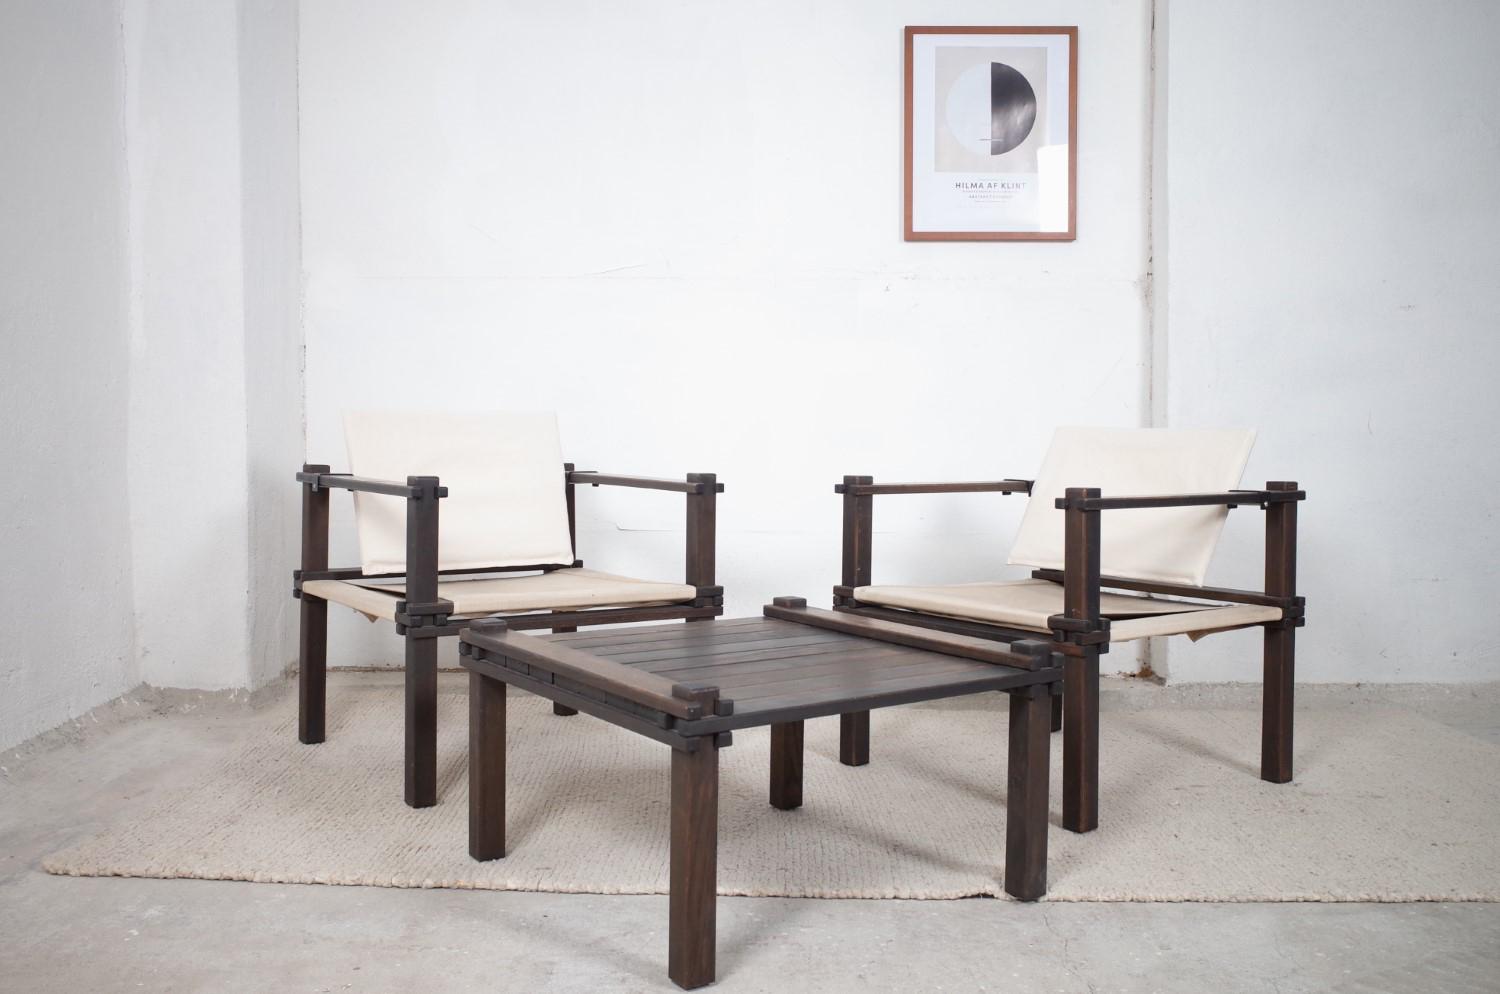 Sehr schönes set midcentury Safari Sessel inklusive Tisch von Gerd Lange für Bofinger aus den 1960er Jahren (Bofinger Farmerprogramm). Die Sessel sind zerlegbar und bestehen aus dunkel gebeiztem Eschenholz. Die Rückenlehnen wurden neu bezogen und